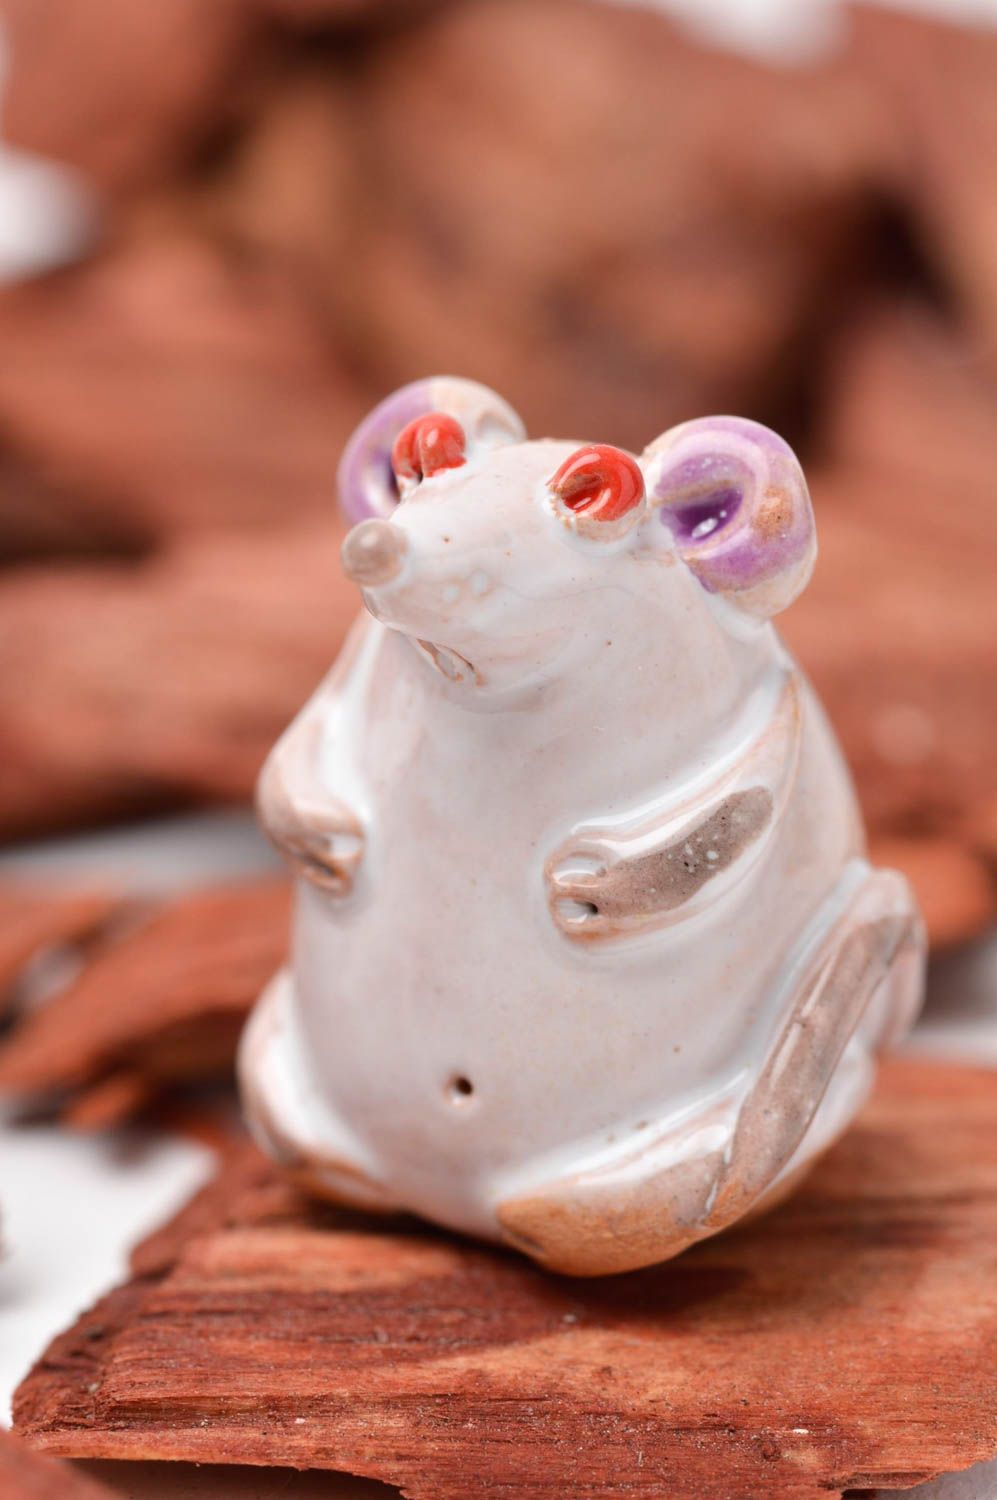 Статуэтка ручной работы глиняная статуэтка фигурка животного расписная Мышь фото 1